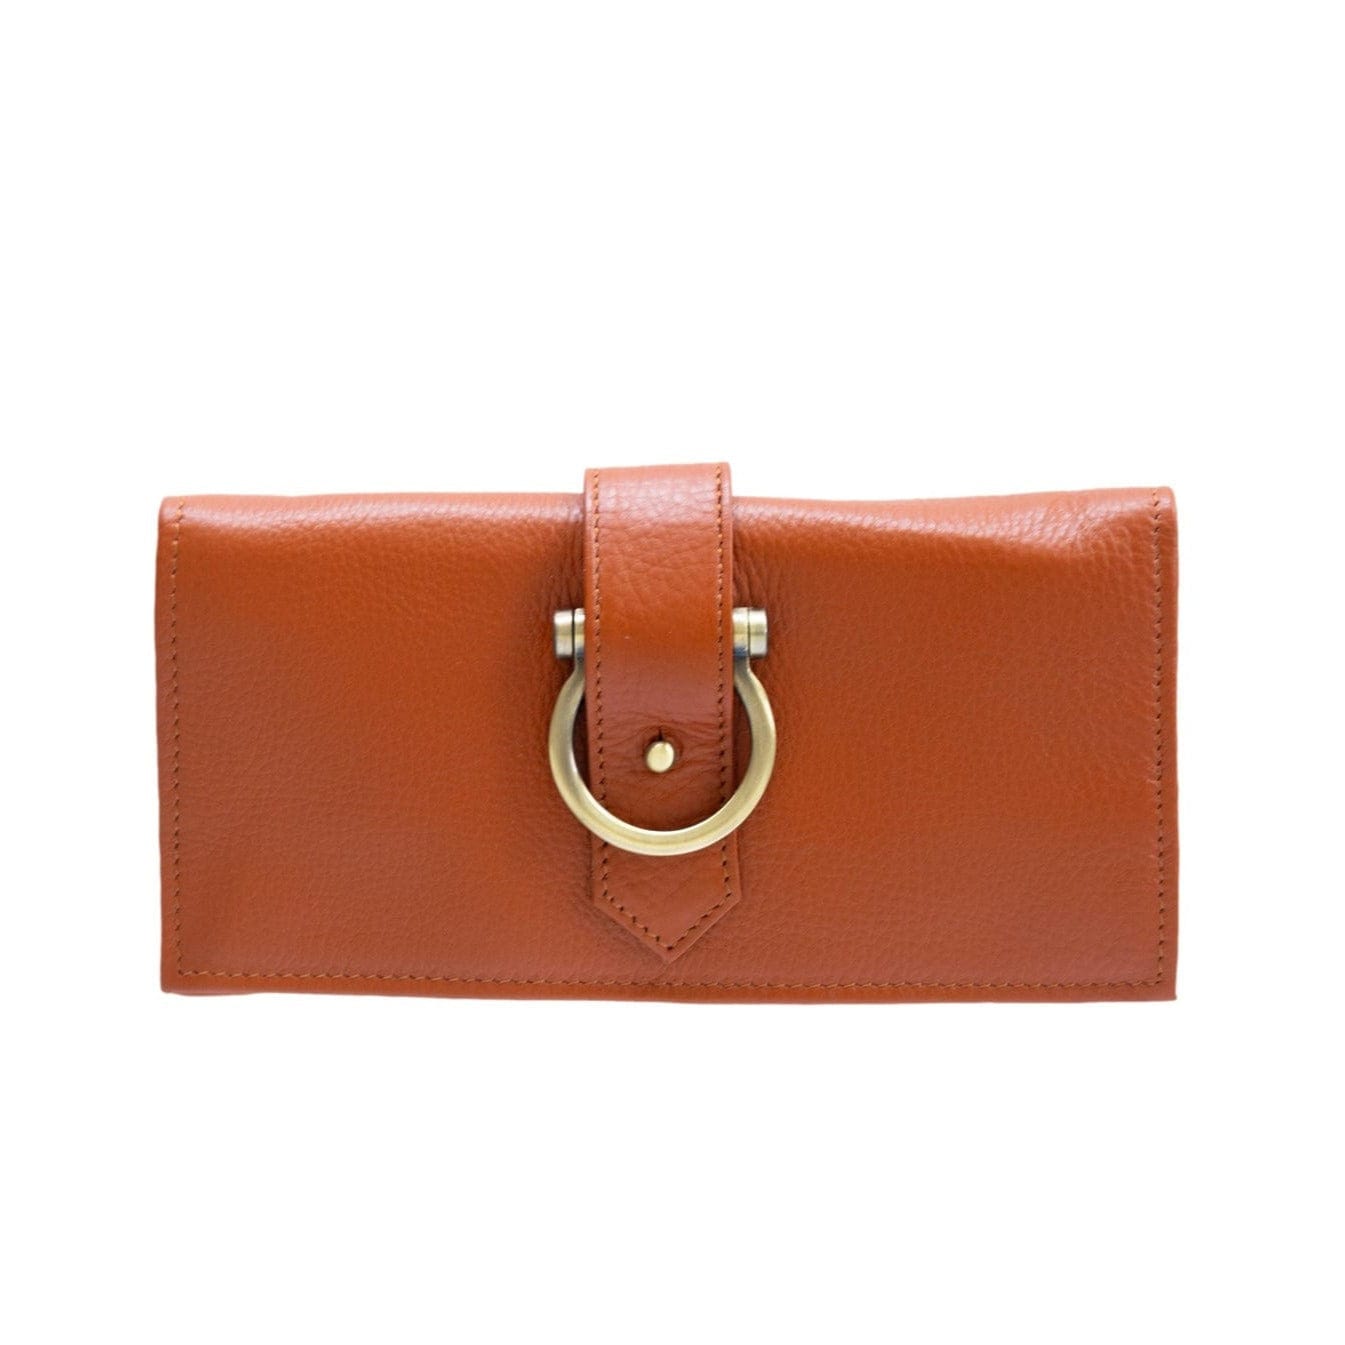 Ciara Crossbody and Wallet - Chestnut Oil Leather | Sapahn.